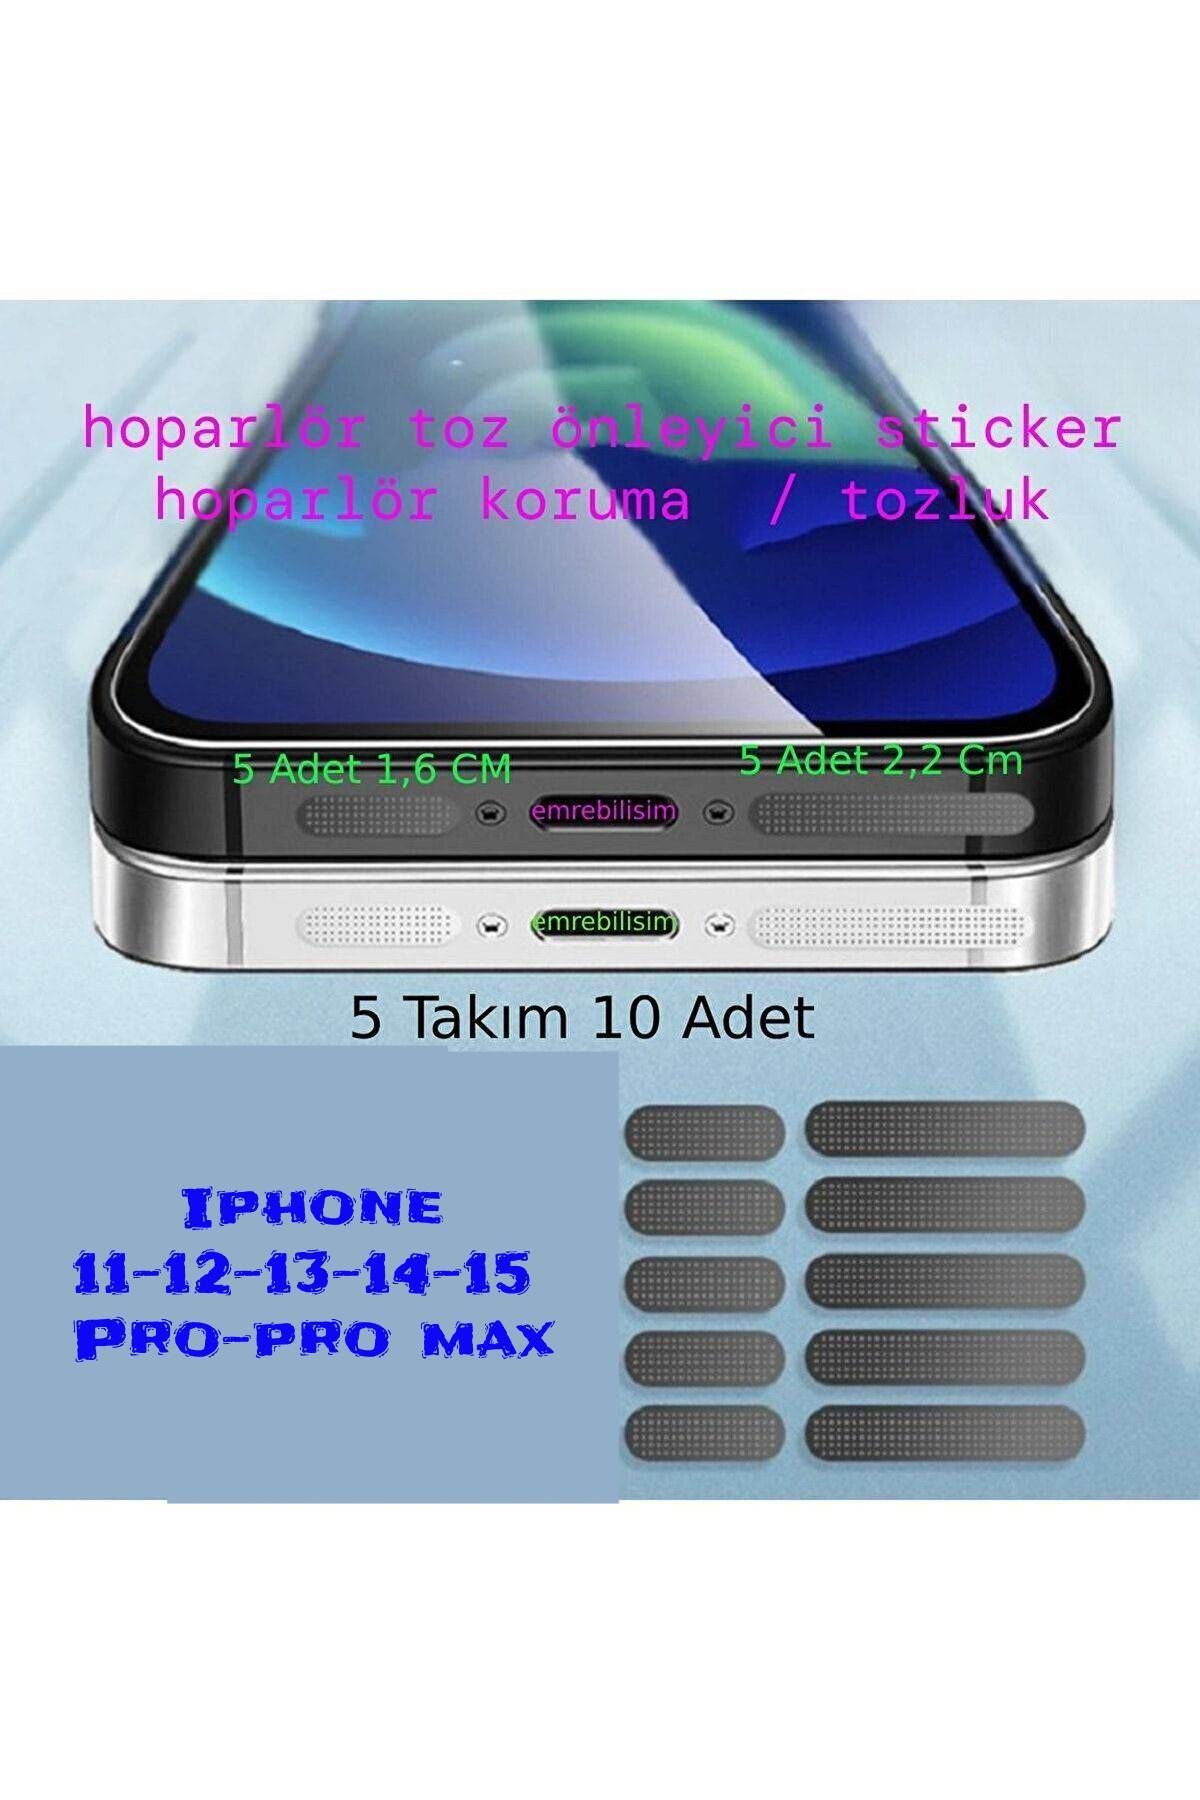 emrebilisim Iphone X/11/12/13/14/15 Pro/promax Tüm Serileri Için Siyah Toz Ve Kir Önleyici Hoparlör Toz Önleyici